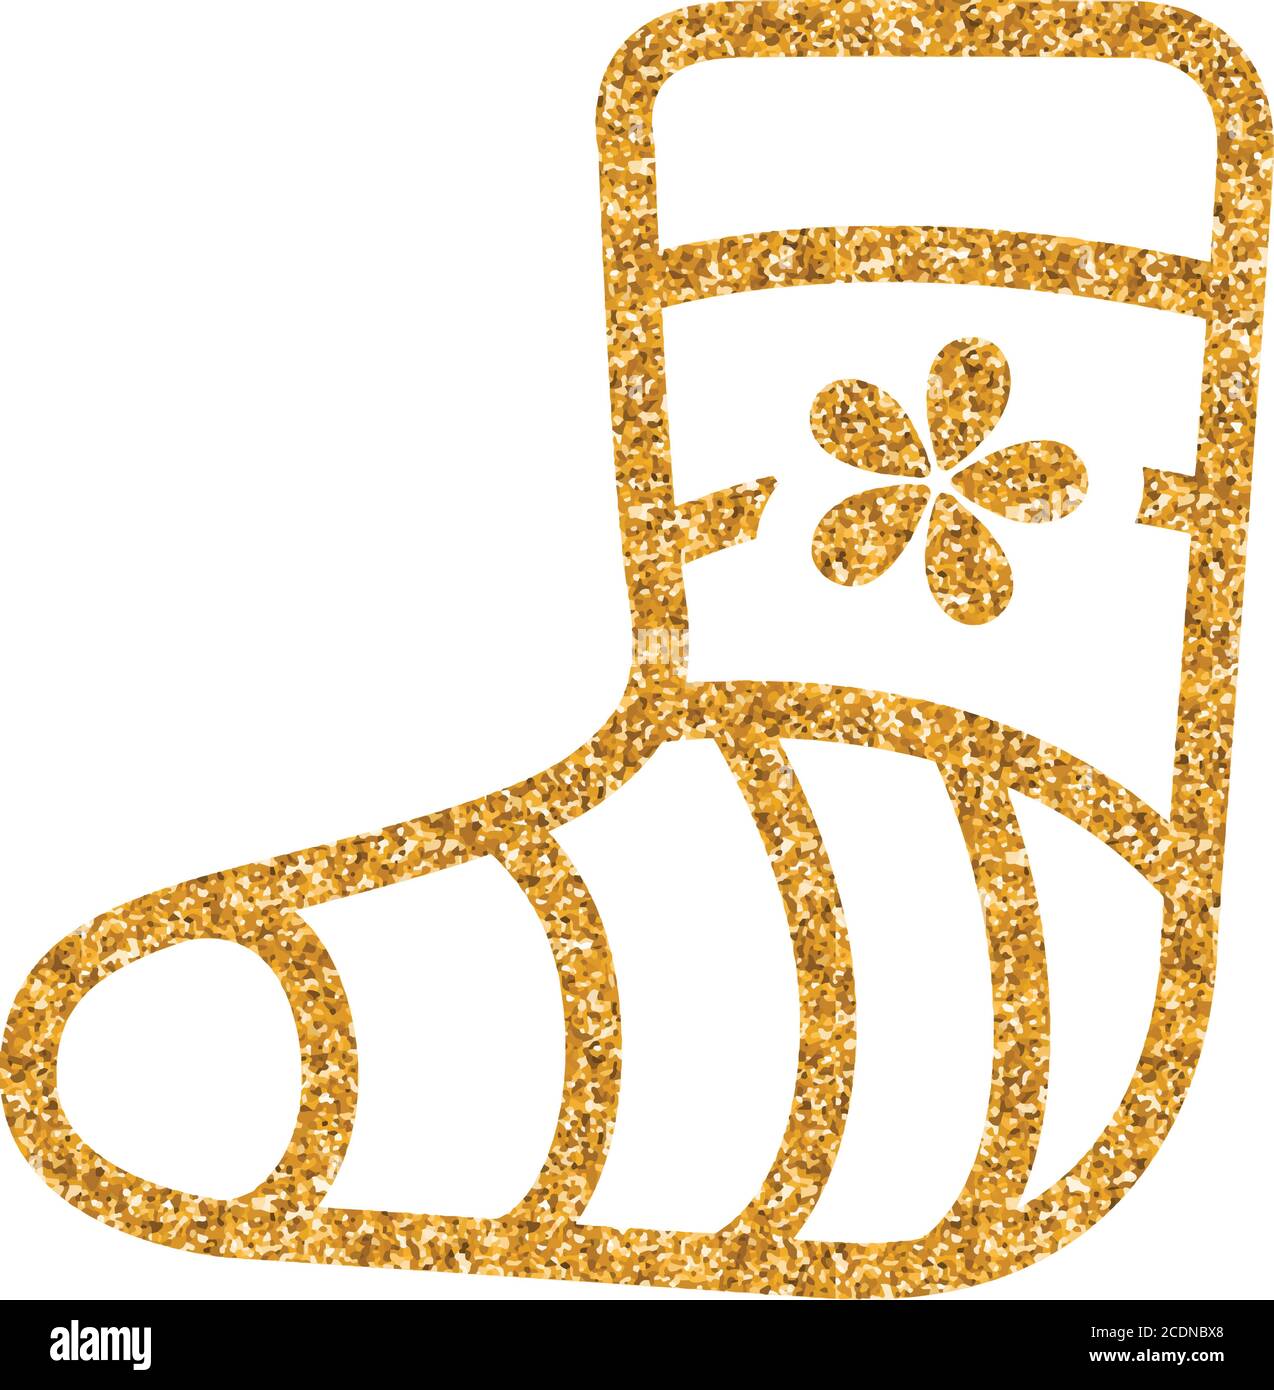 Icône de pied blessé dans une texture pailletée dorée. Illustration vectorielle de luxe étincelante. Illustration de Vecteur